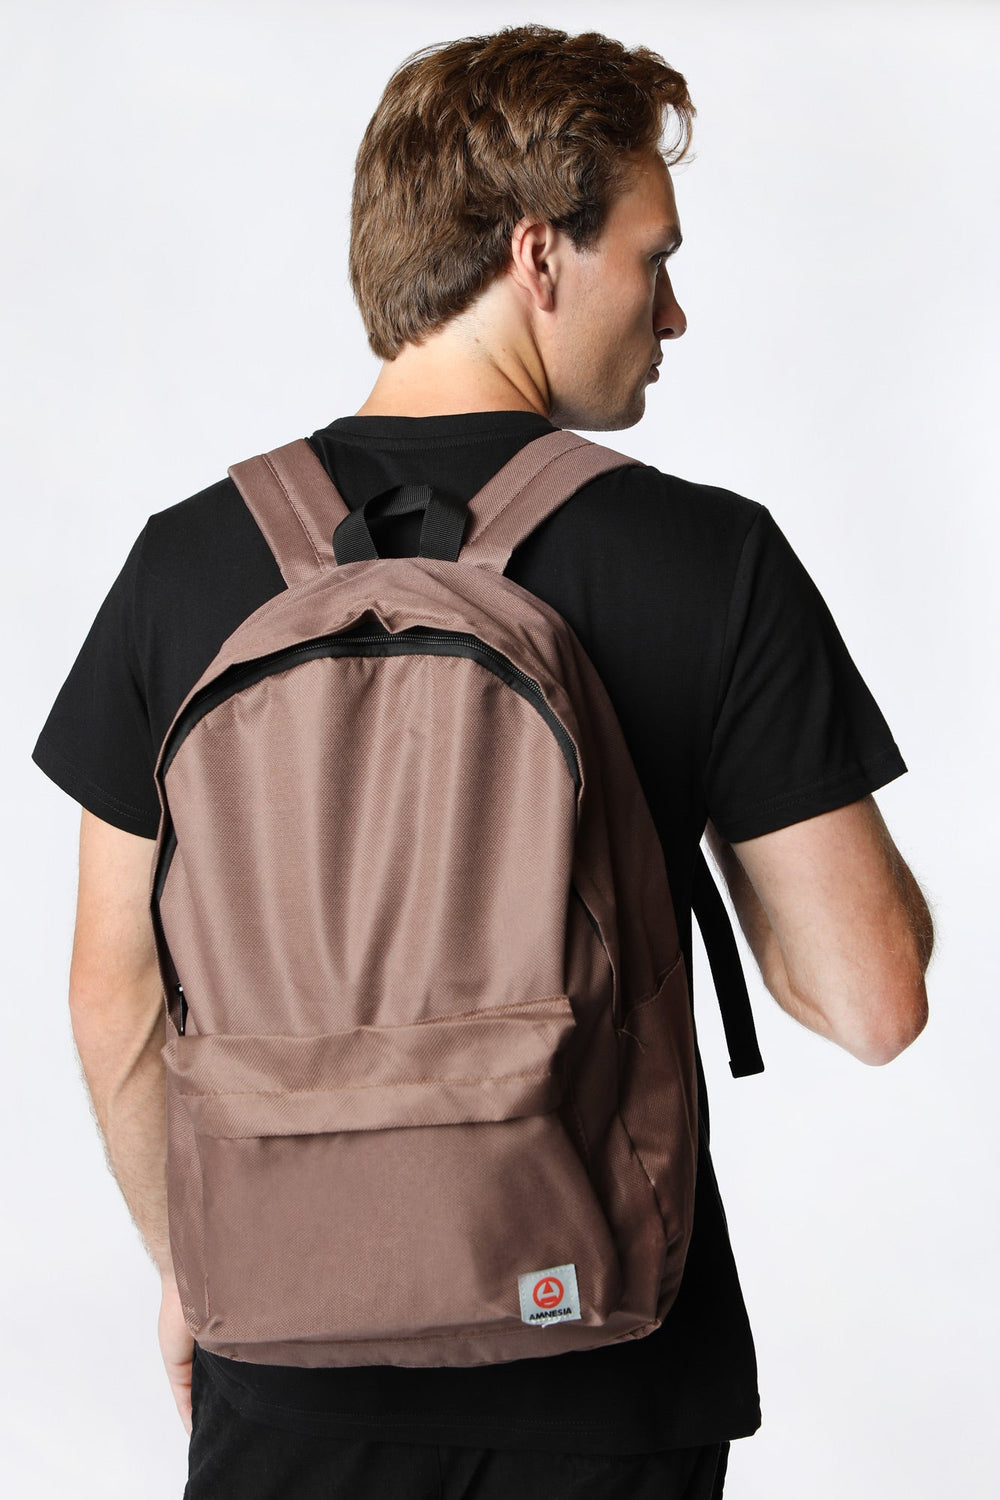 Amnesia Classic Backpack Tan